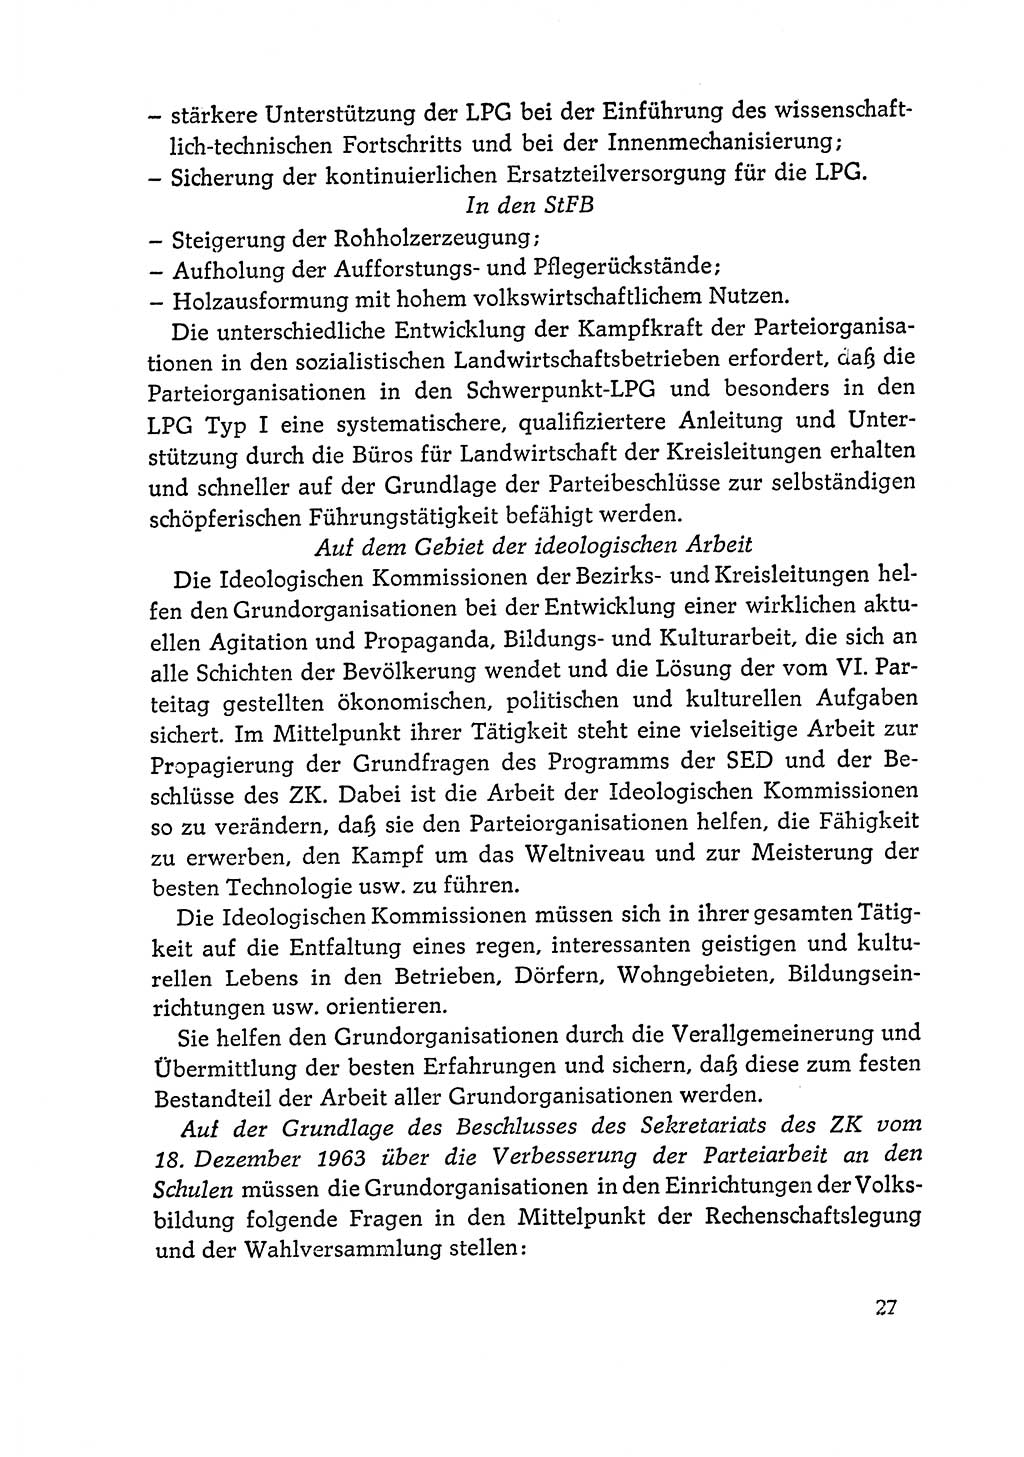 Dokumente der Sozialistischen Einheitspartei Deutschlands (SED) [Deutsche Demokratische Republik (DDR)] 1964-1965, Seite 27 (Dok. SED DDR 1964-1965, S. 27)